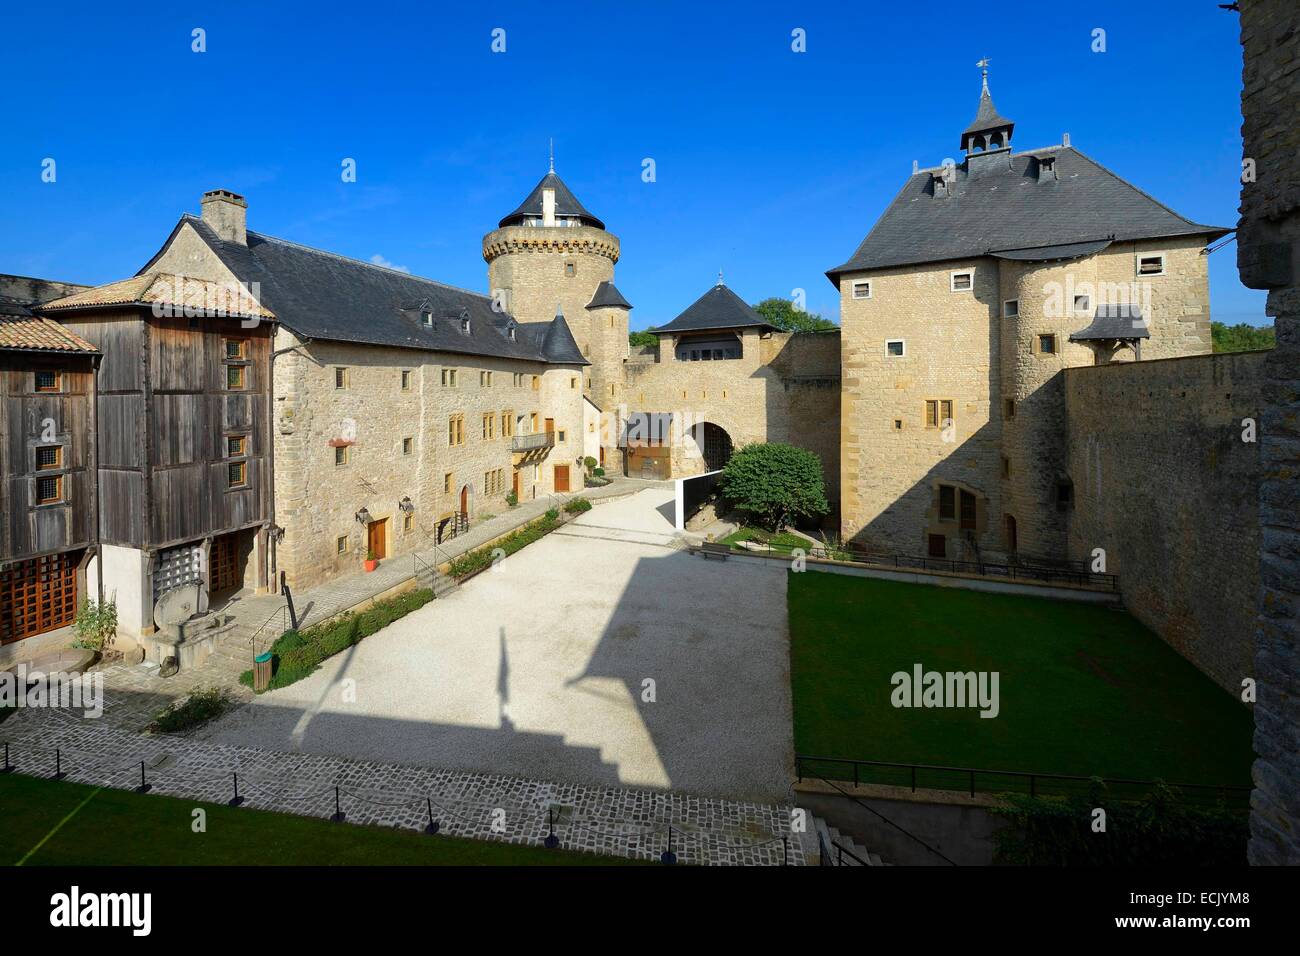 France, Moselle, Manderen, Malbrouck castle Stock Photo